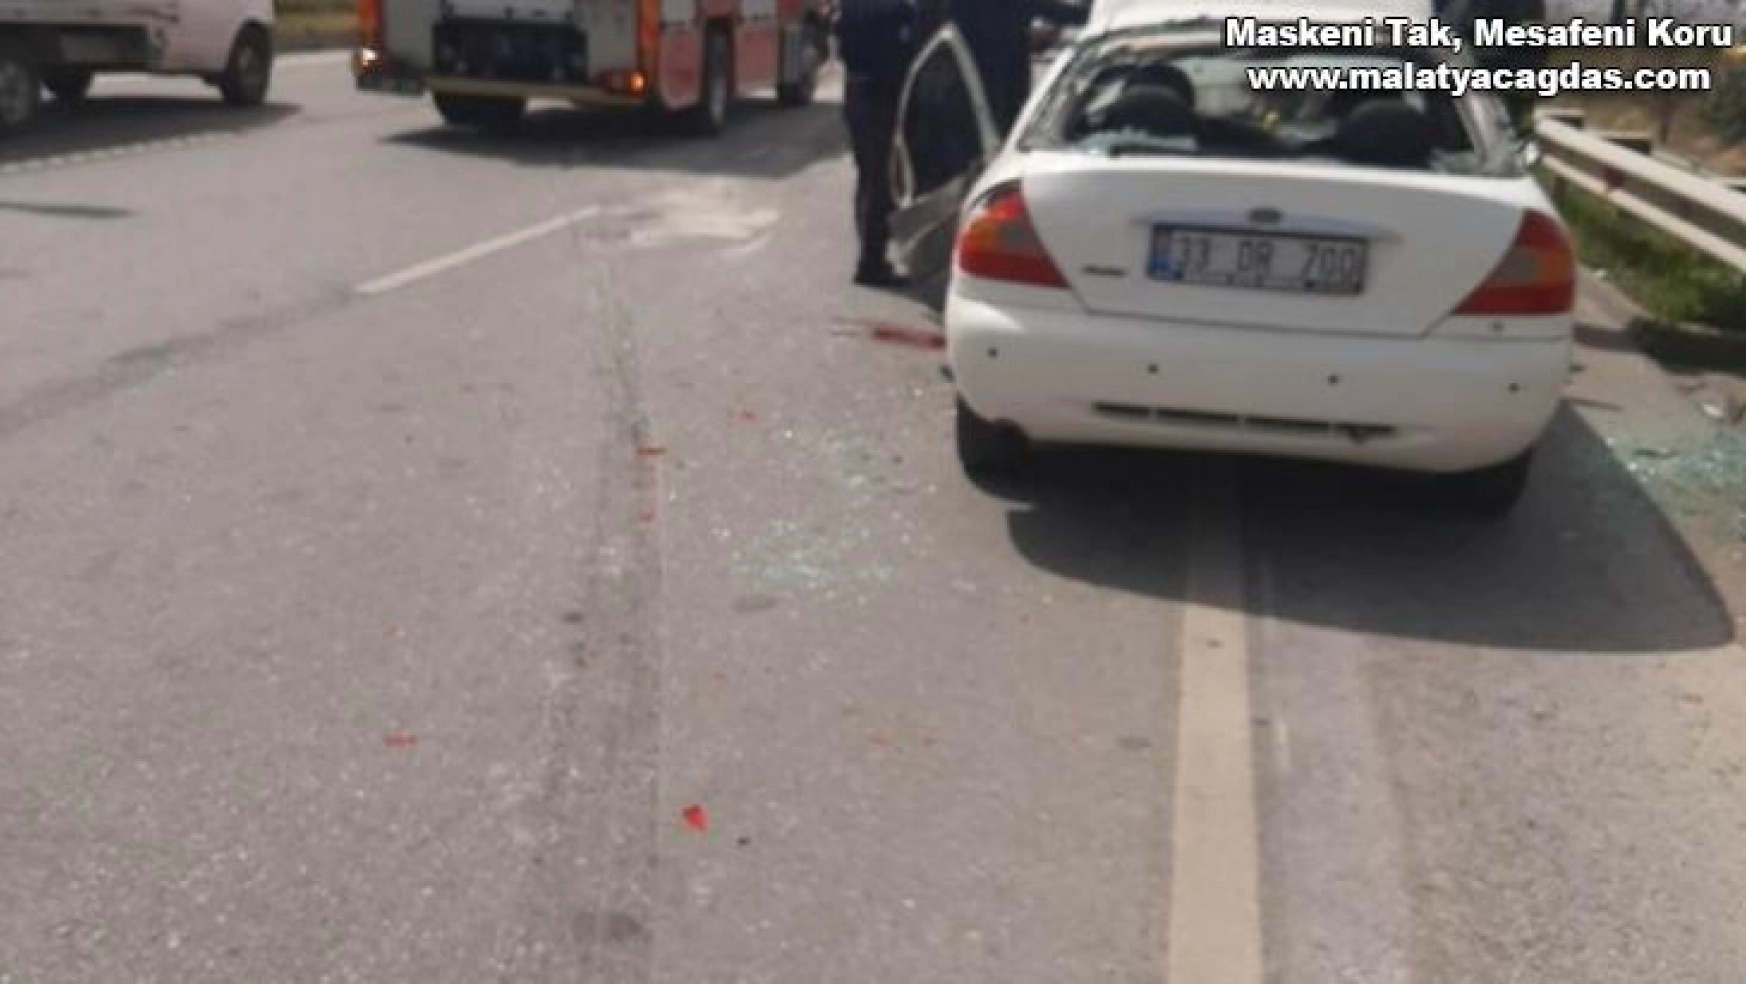 Hatay'da beton mikseri otomobile çarptı: 1 ölü